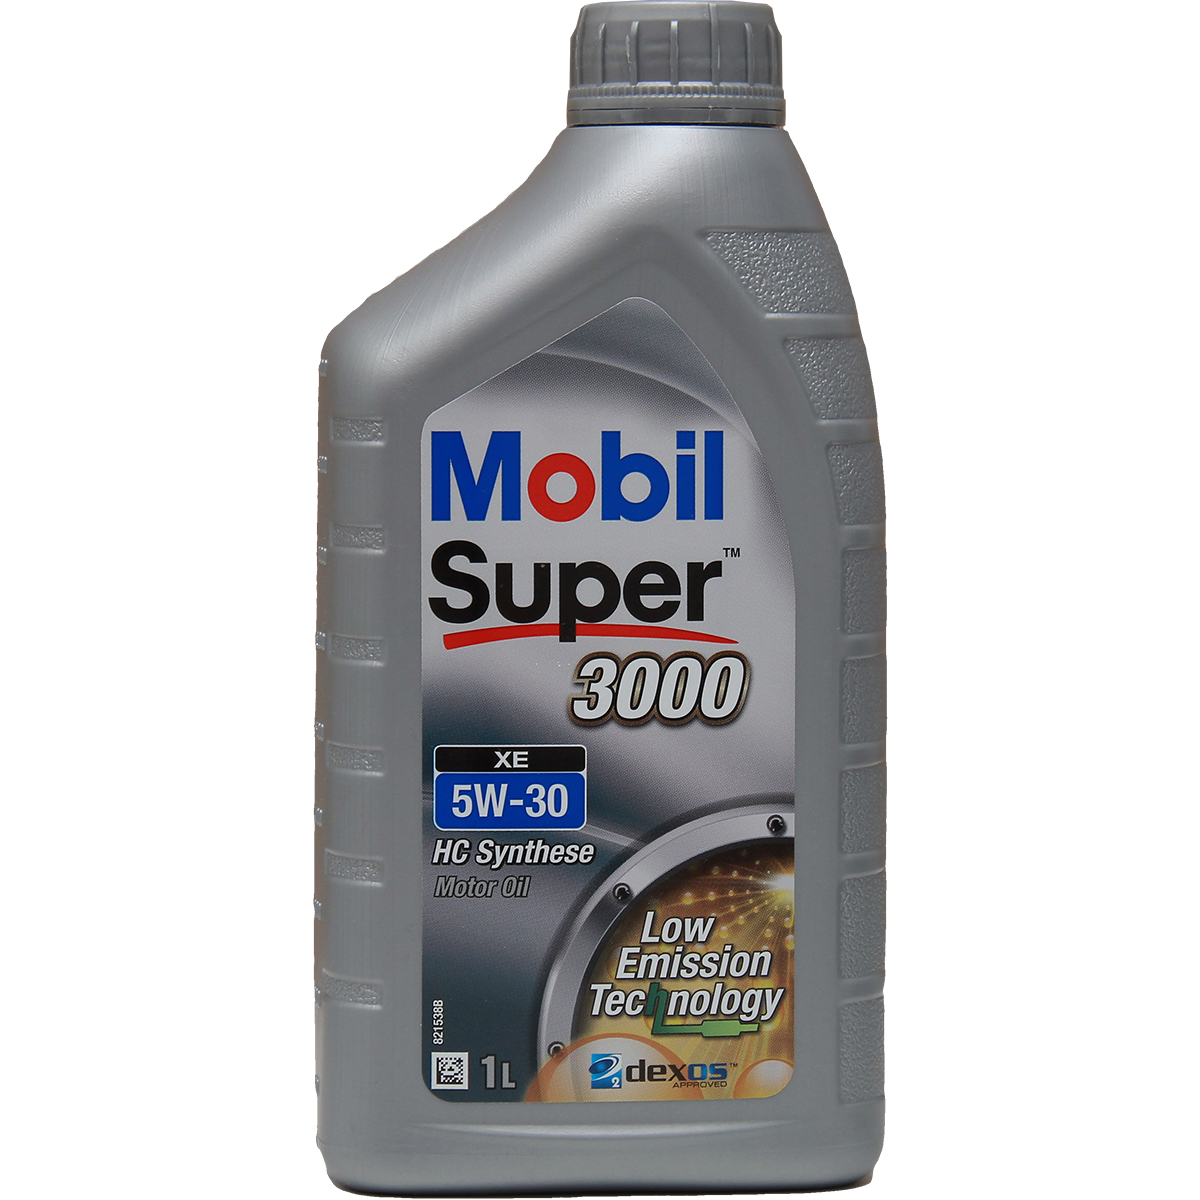 Mobil Super 3000 XE 5W-30 1 Liter